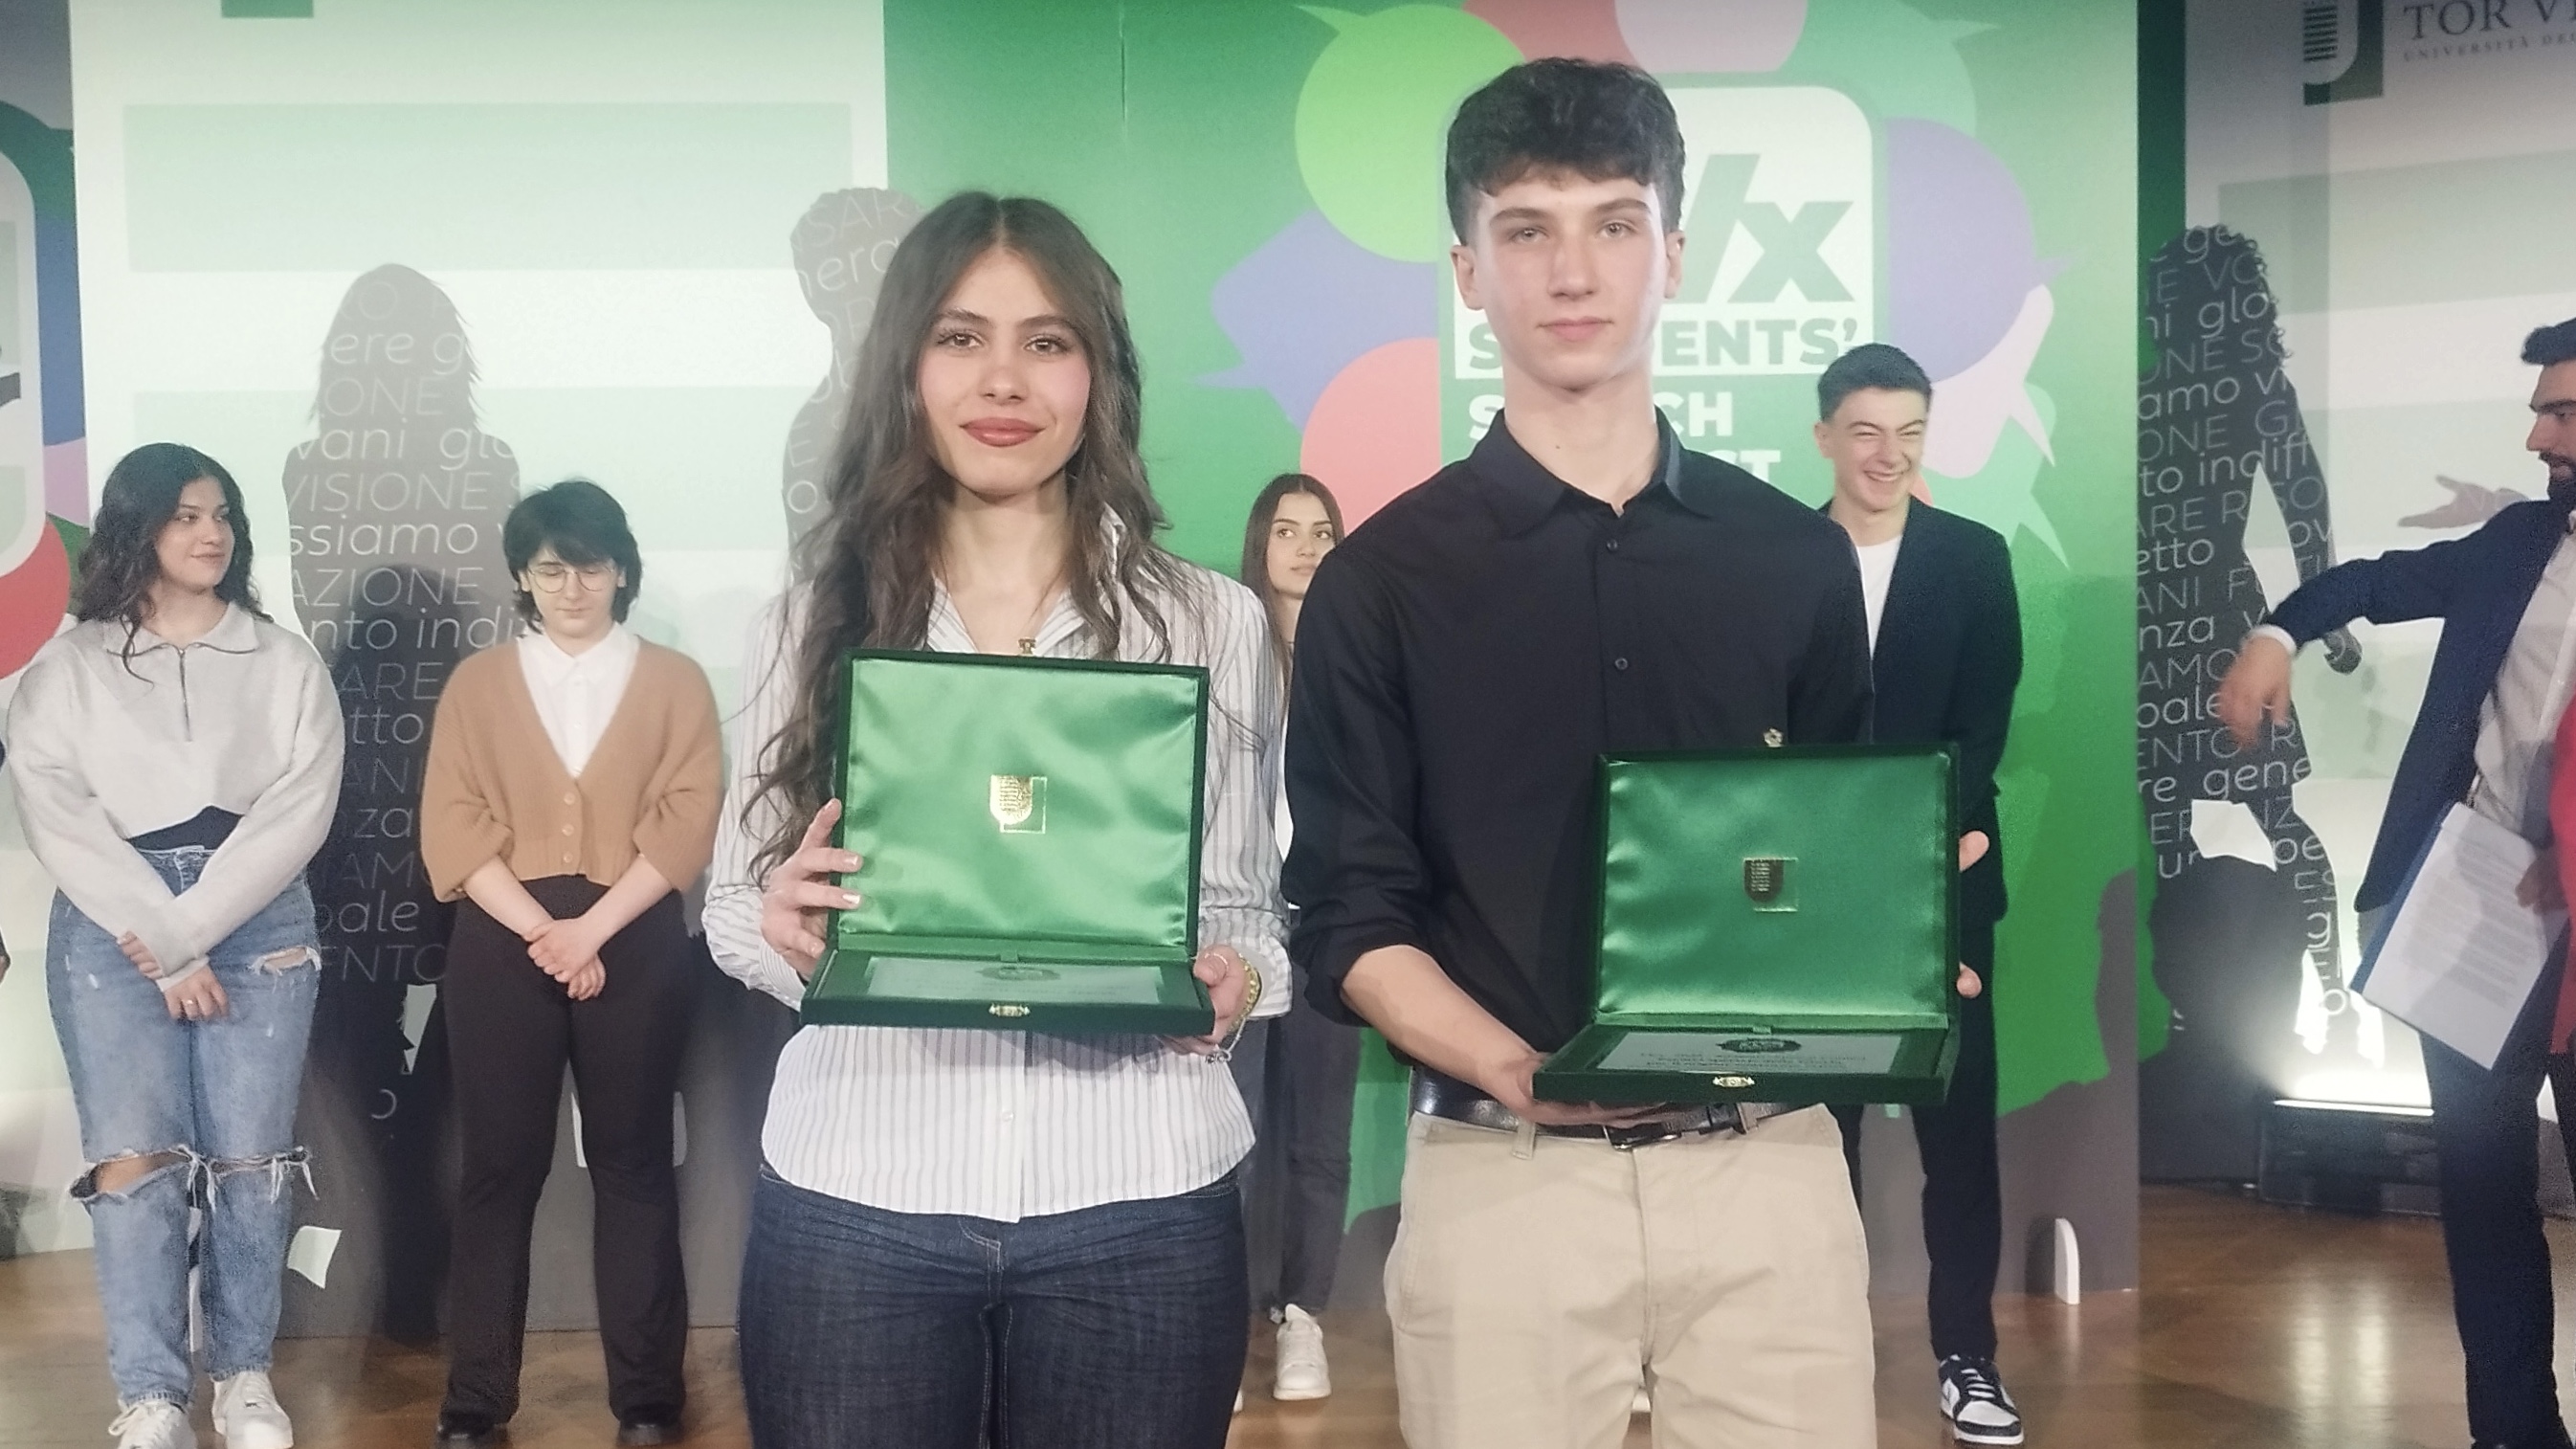 gallery TVx Students' Speech Contest 2024: vince Elisa Draghin con un discorso contro l’omologazione giovanile